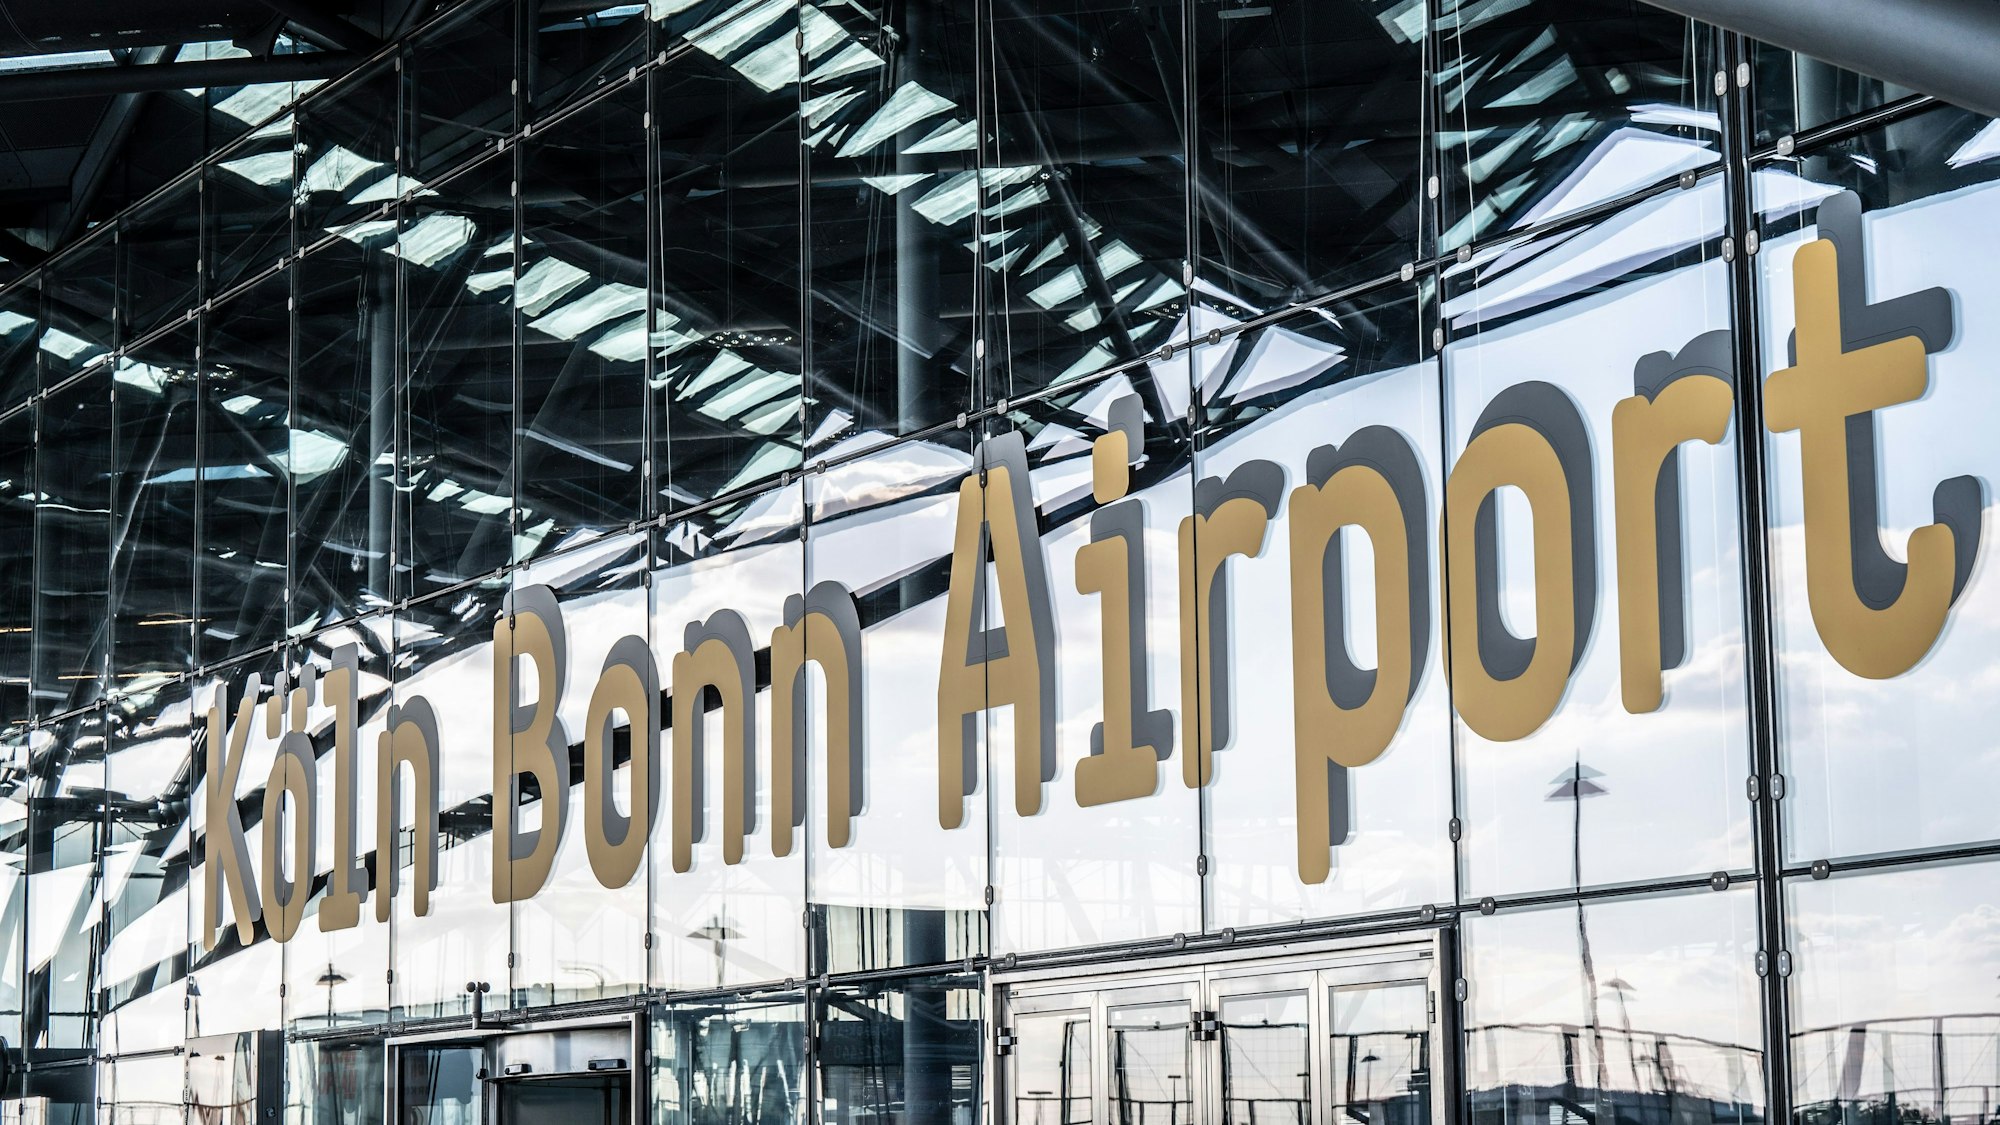 08.07.2022, Köln: Schriftzug Köln Bonn Airport am Flughafen. Foto: Uwe Weiser